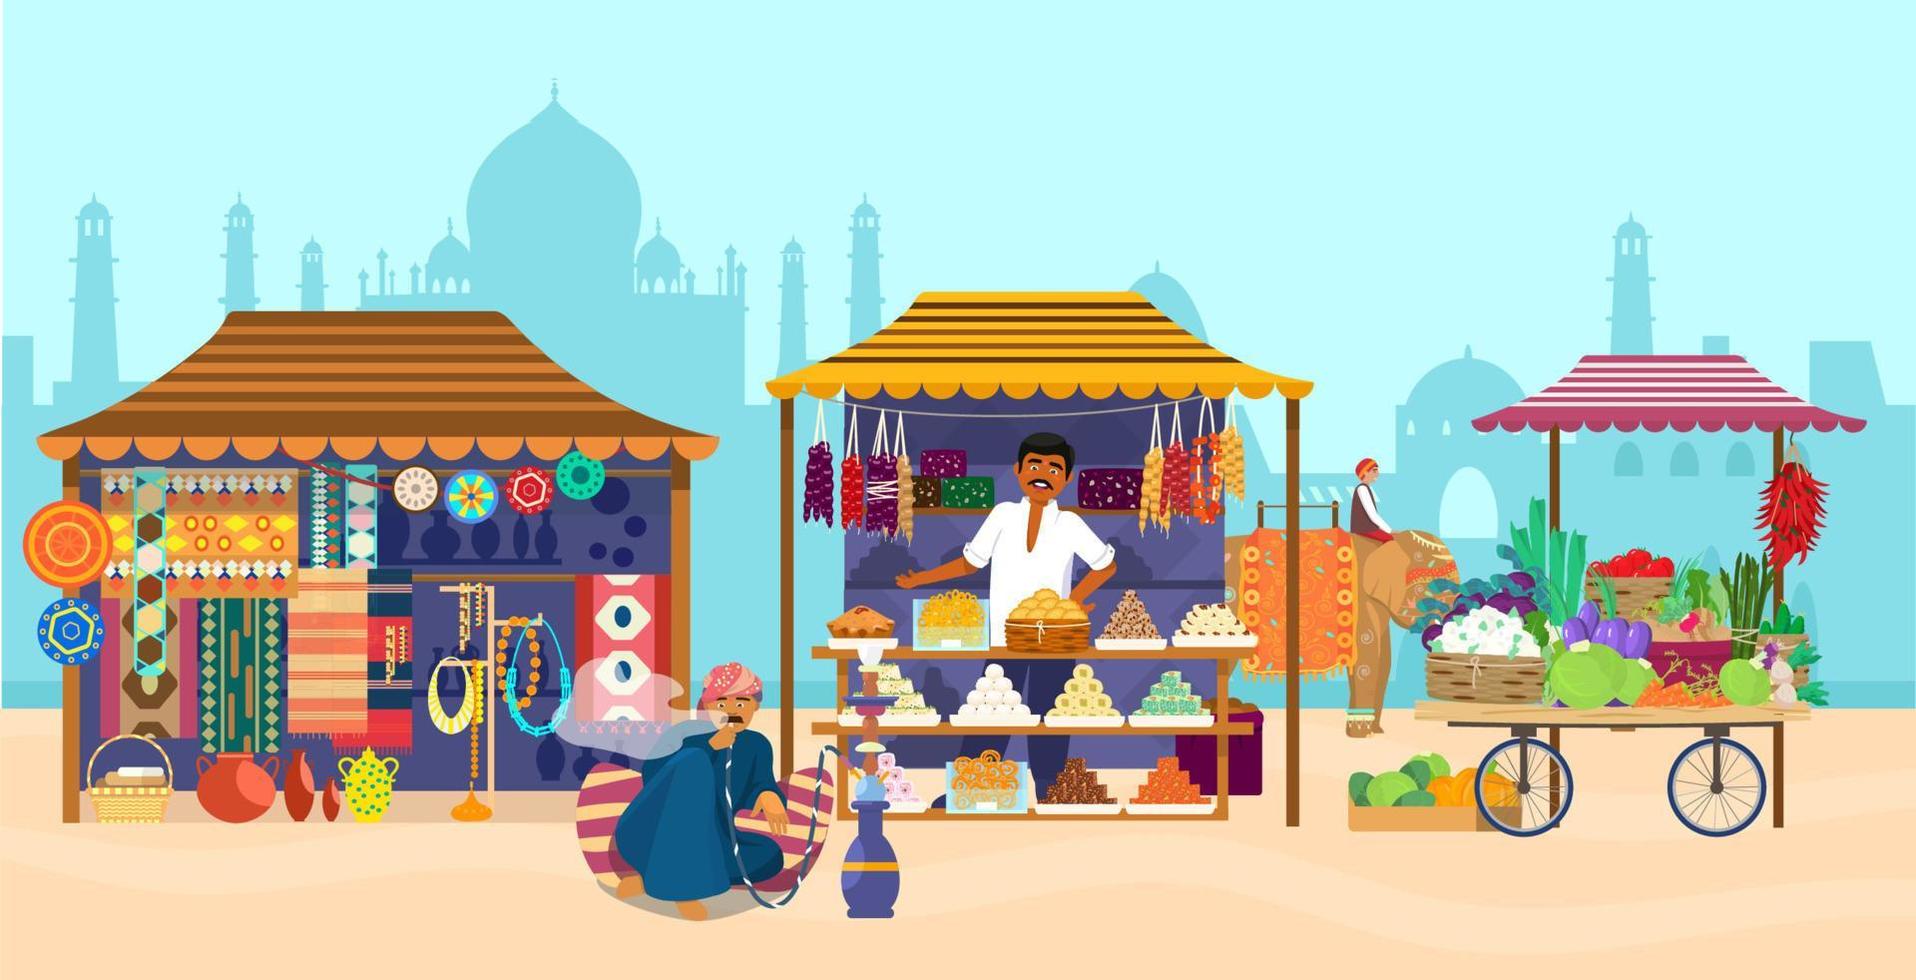 vektor illustration av asiatisk marknad med olika butiker och människor. elefantryttare, taj mahal siluett, souvenirbutik, godisbutik, keramik, mattor, tyger, grönsaker, man som röker vattenpipa.